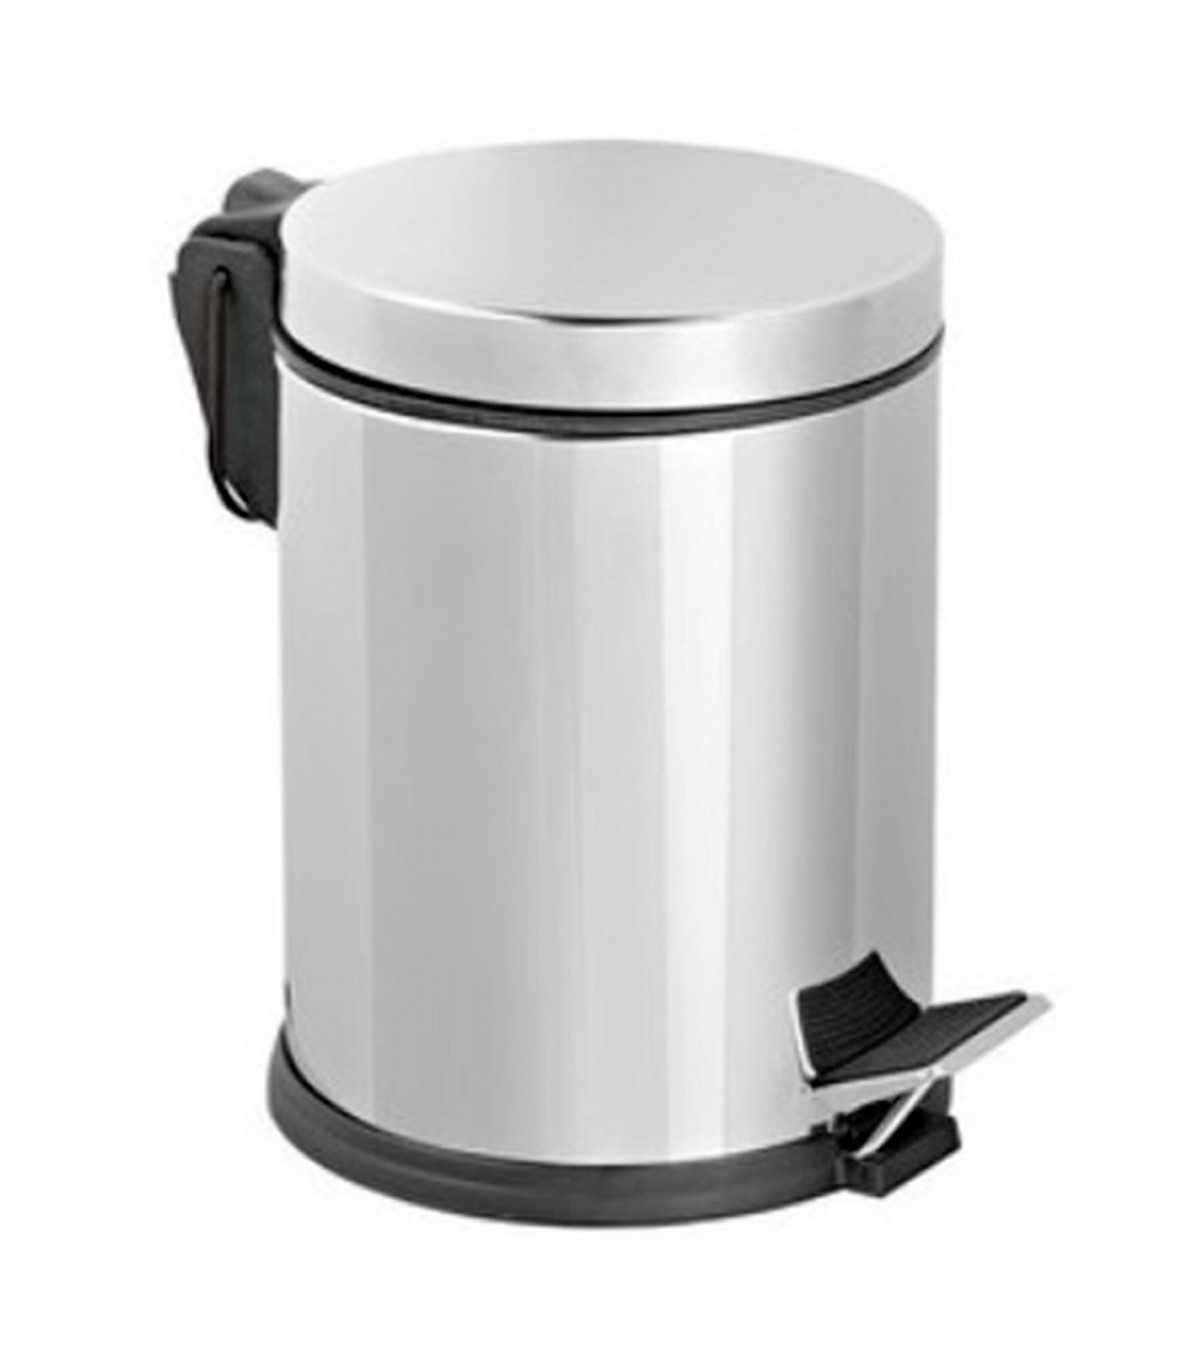 Cubo de basura metálico con pedal, papelera cilíndrica de metal para baño,  cocina, aseo u oficina (12 litros, 35,5 x 24,5 x 31 c